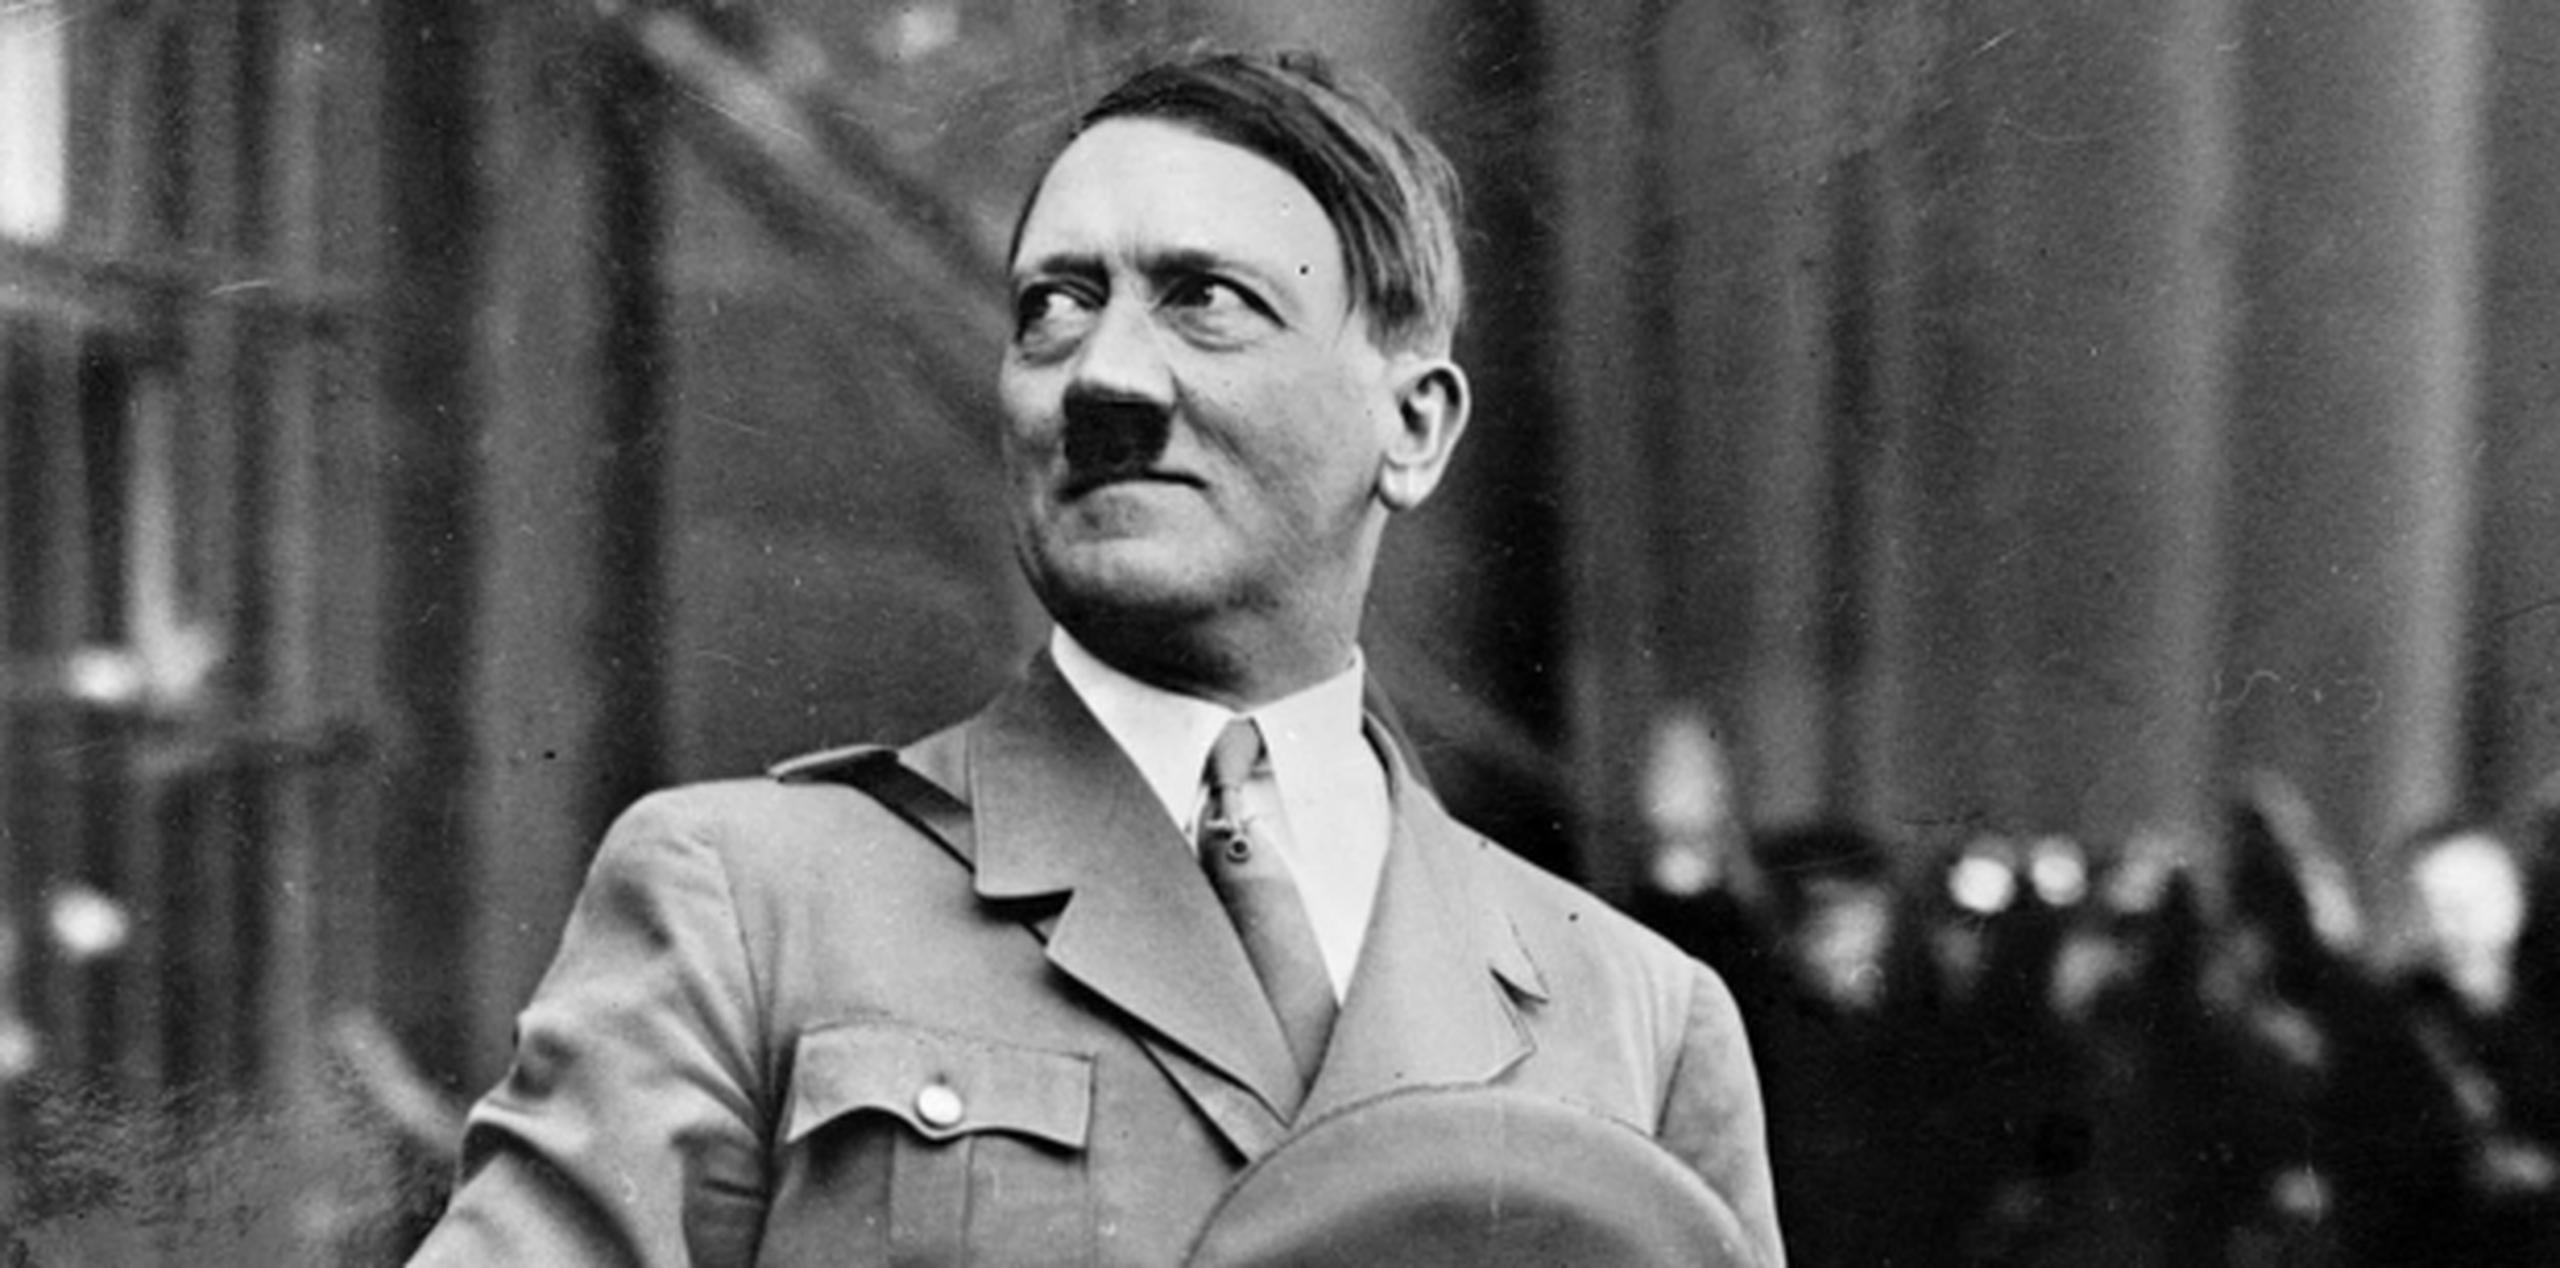 Alrededor de 4,000 municipios en Austria y Alemania, otorgaron a Hitler durante el régimen nacionalsocialista (1933-1945) el título de ciudadano de honor. (Archivo)